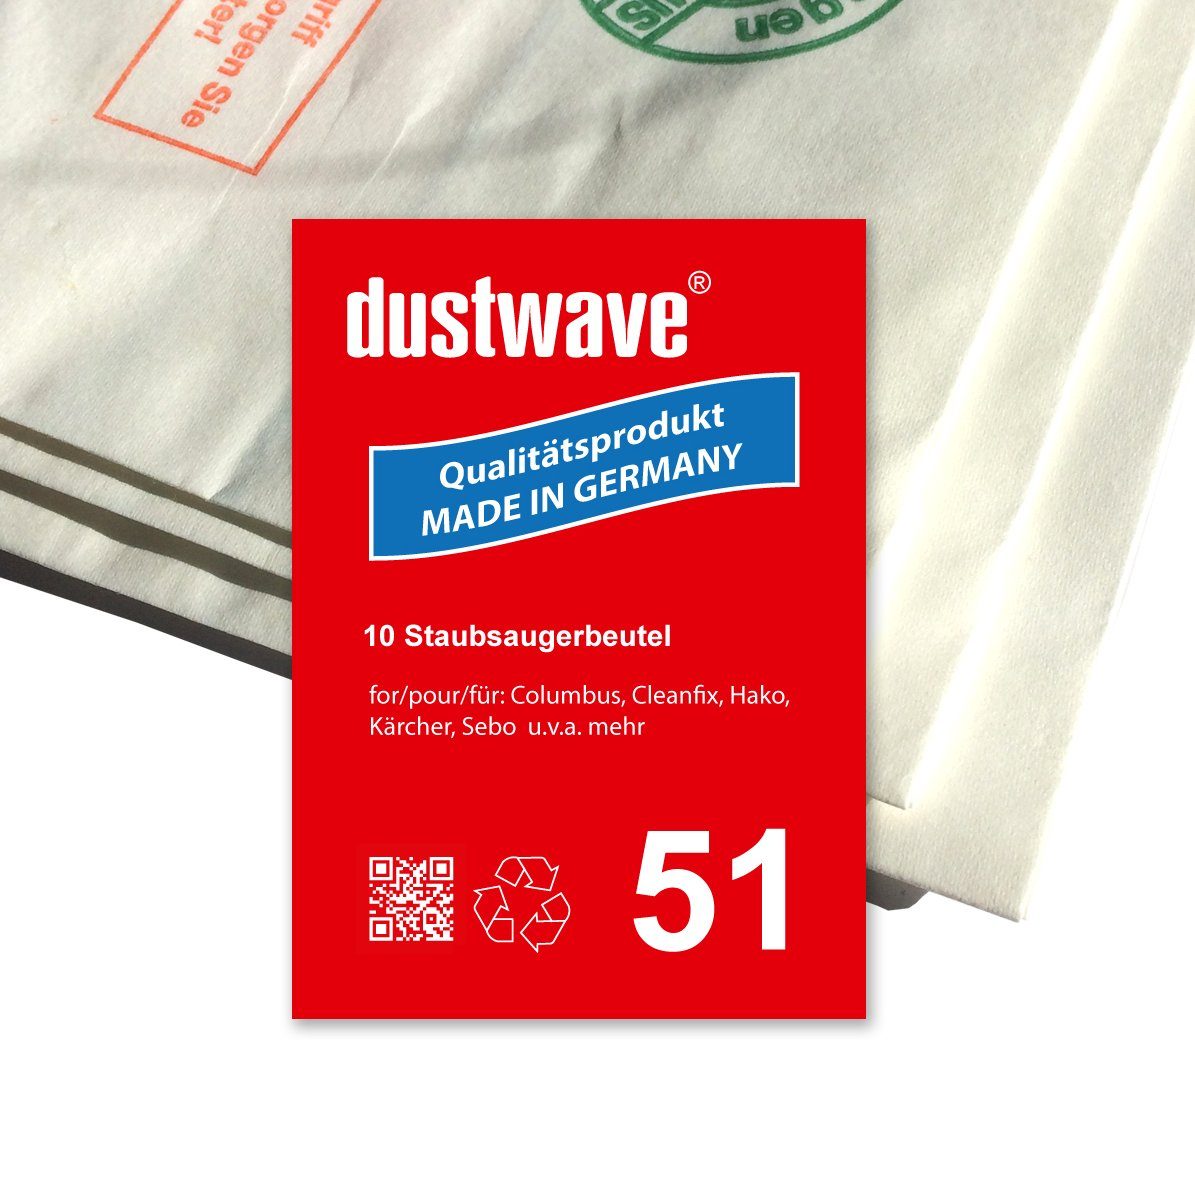 Dustwave Staubsaugerbeutel Sparpack, passend für Columbus BS 350 / BS350, 5 St., Sparpack, 5 Staubsaugerbeutel + 1 Hepa-Filter (ca. 15x15cm - zuschneidbar)